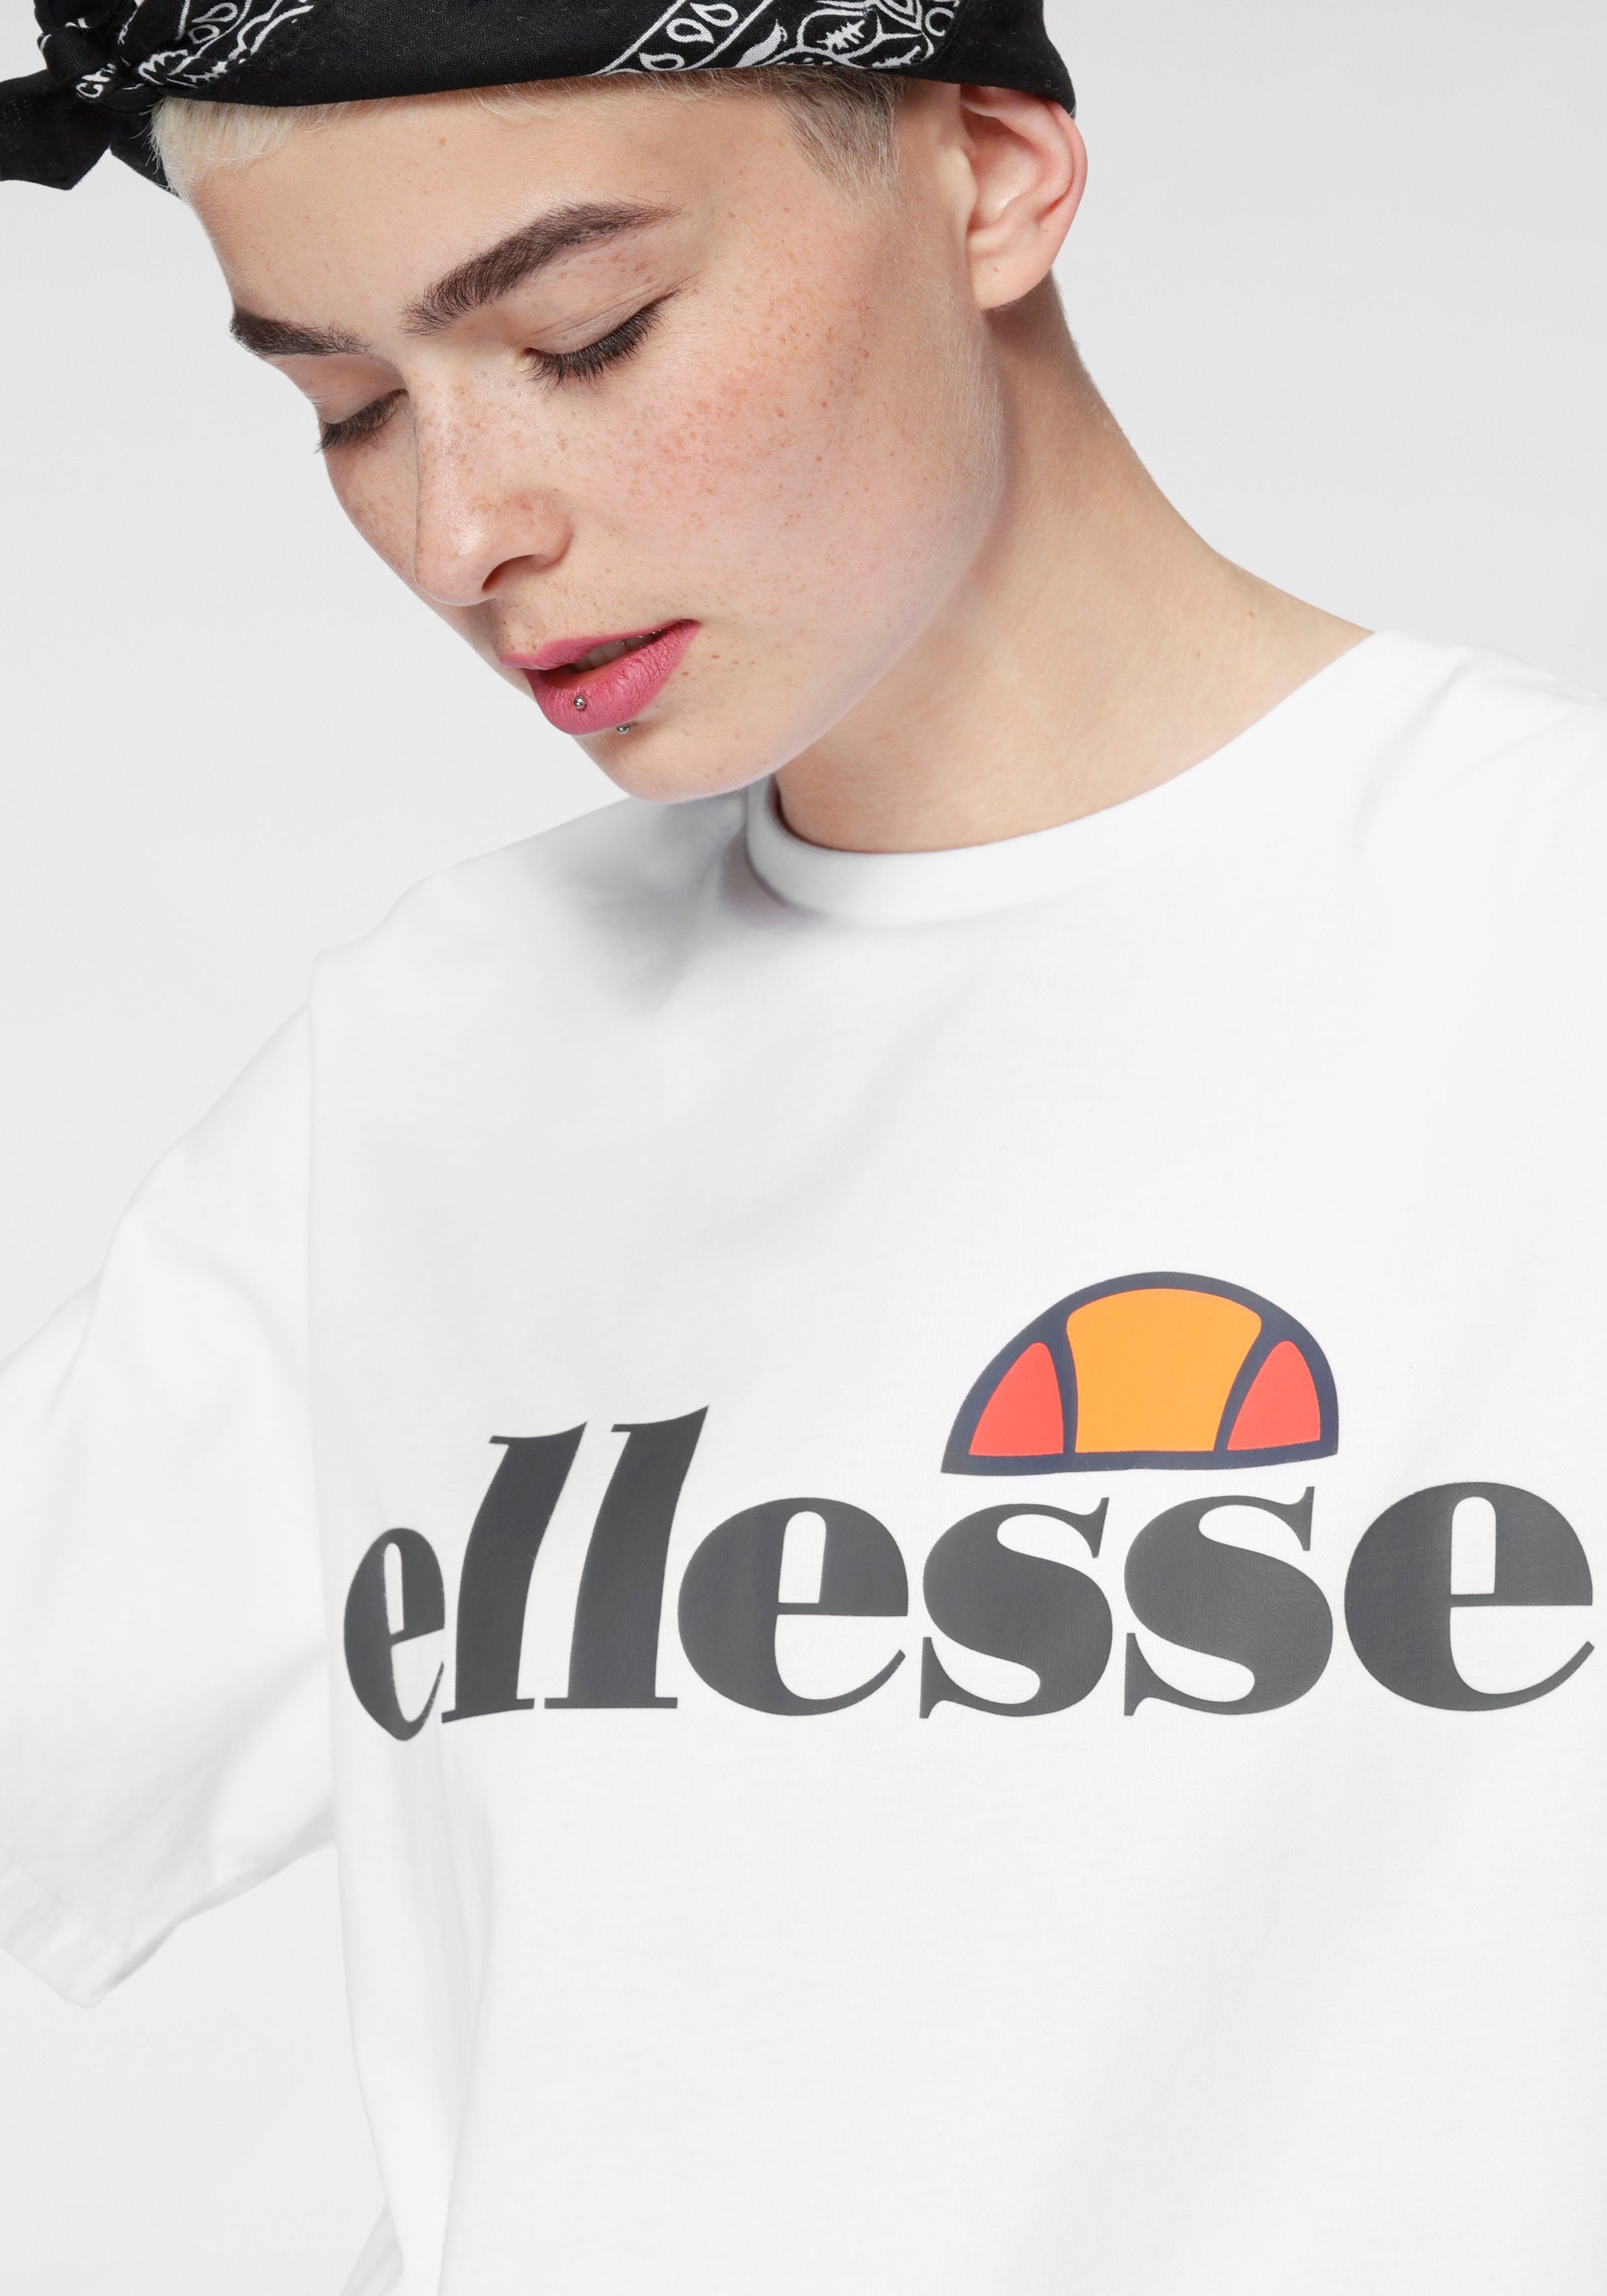 ALBANY Ellesse T-Shirt TEE weiß